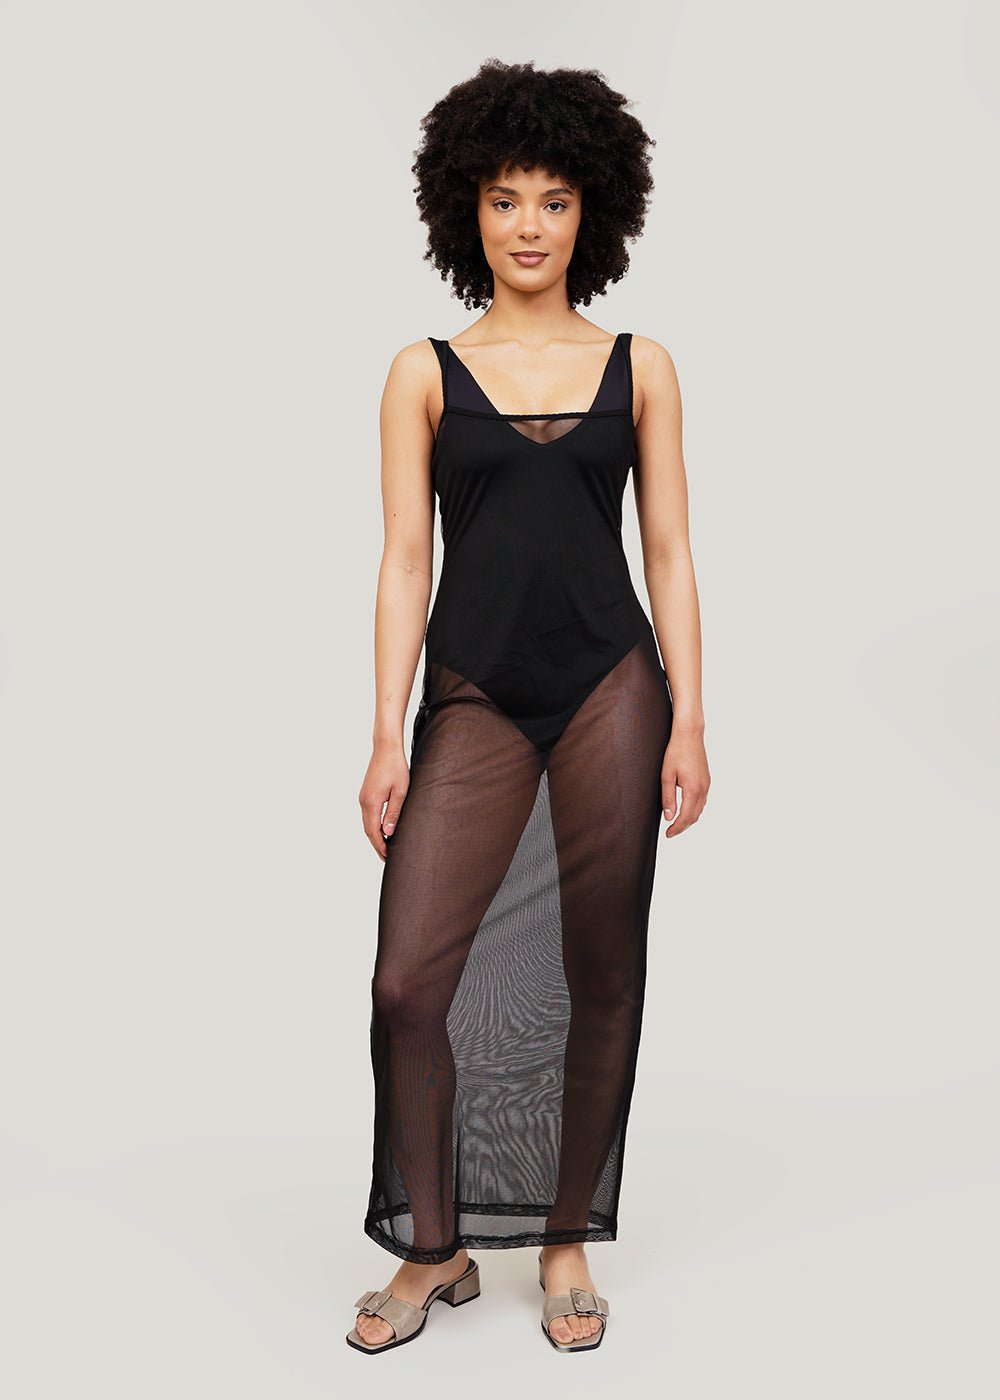 Kye Intimates Black Overlay Slip Dress - New Classics Studios Sustainable Ethical Fashion Canada